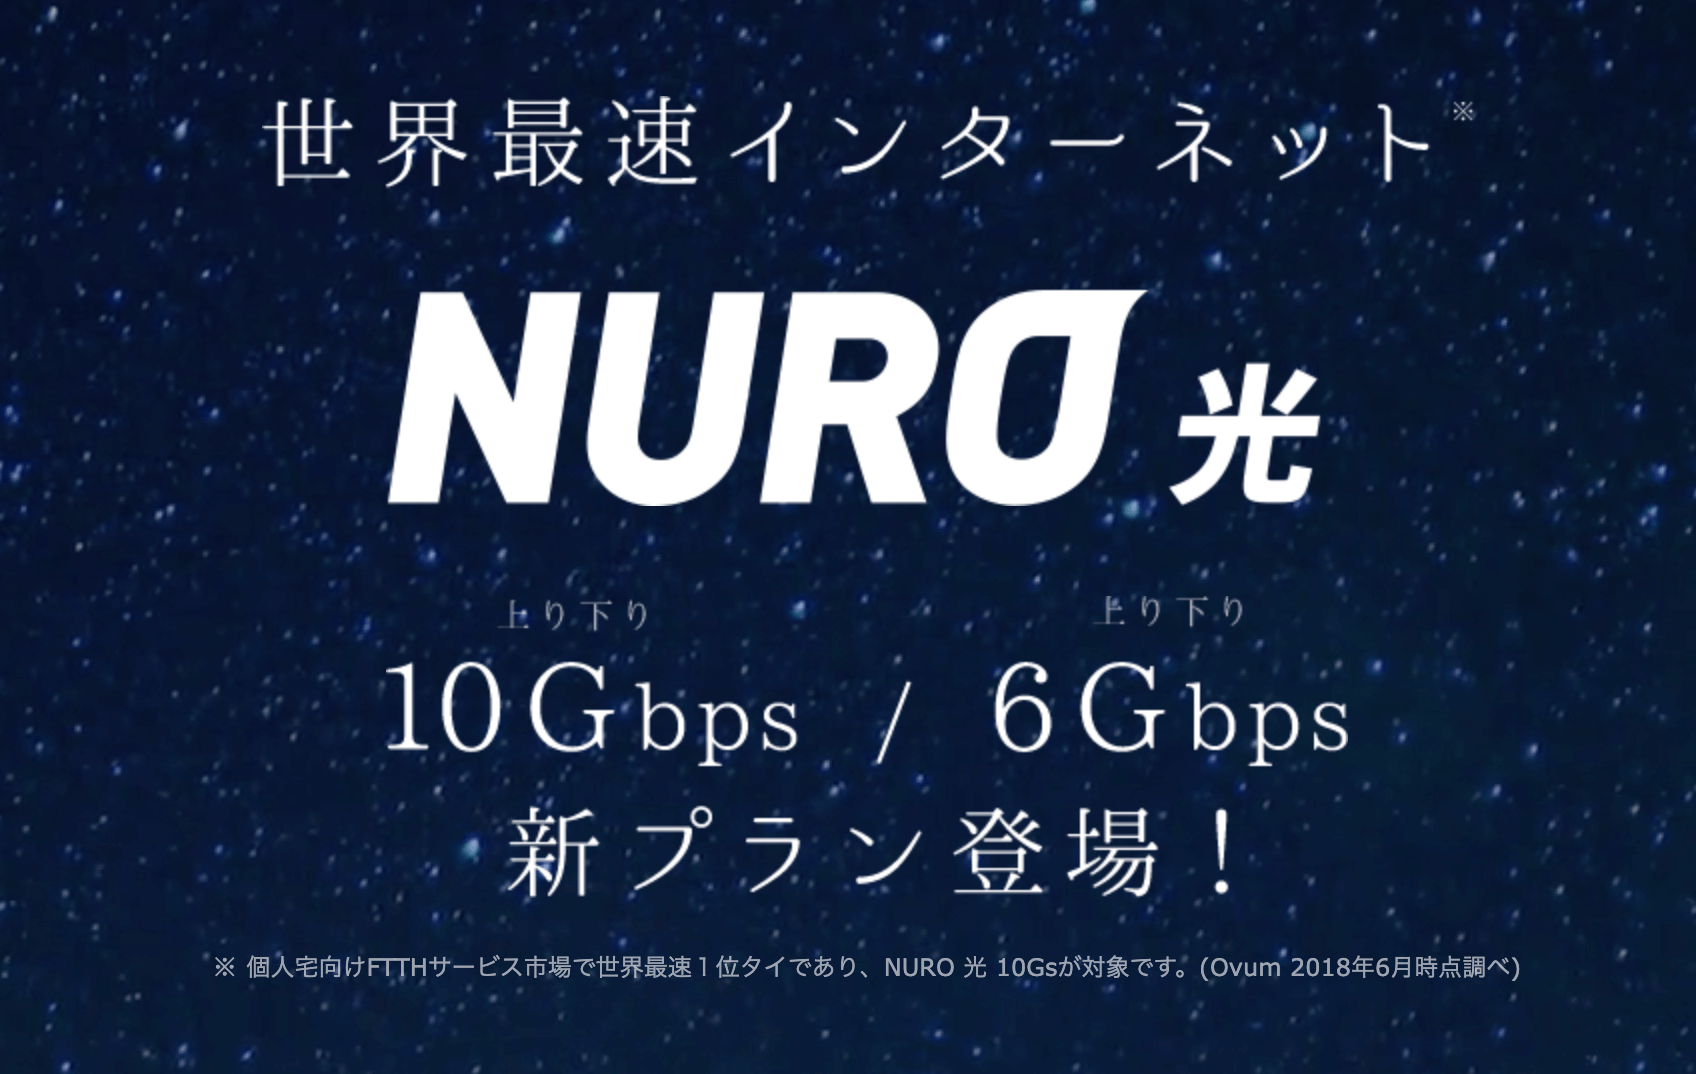 超爆速nuro光10g 6gは世界最高速サービスだが乗り換えるべき ネトカツ